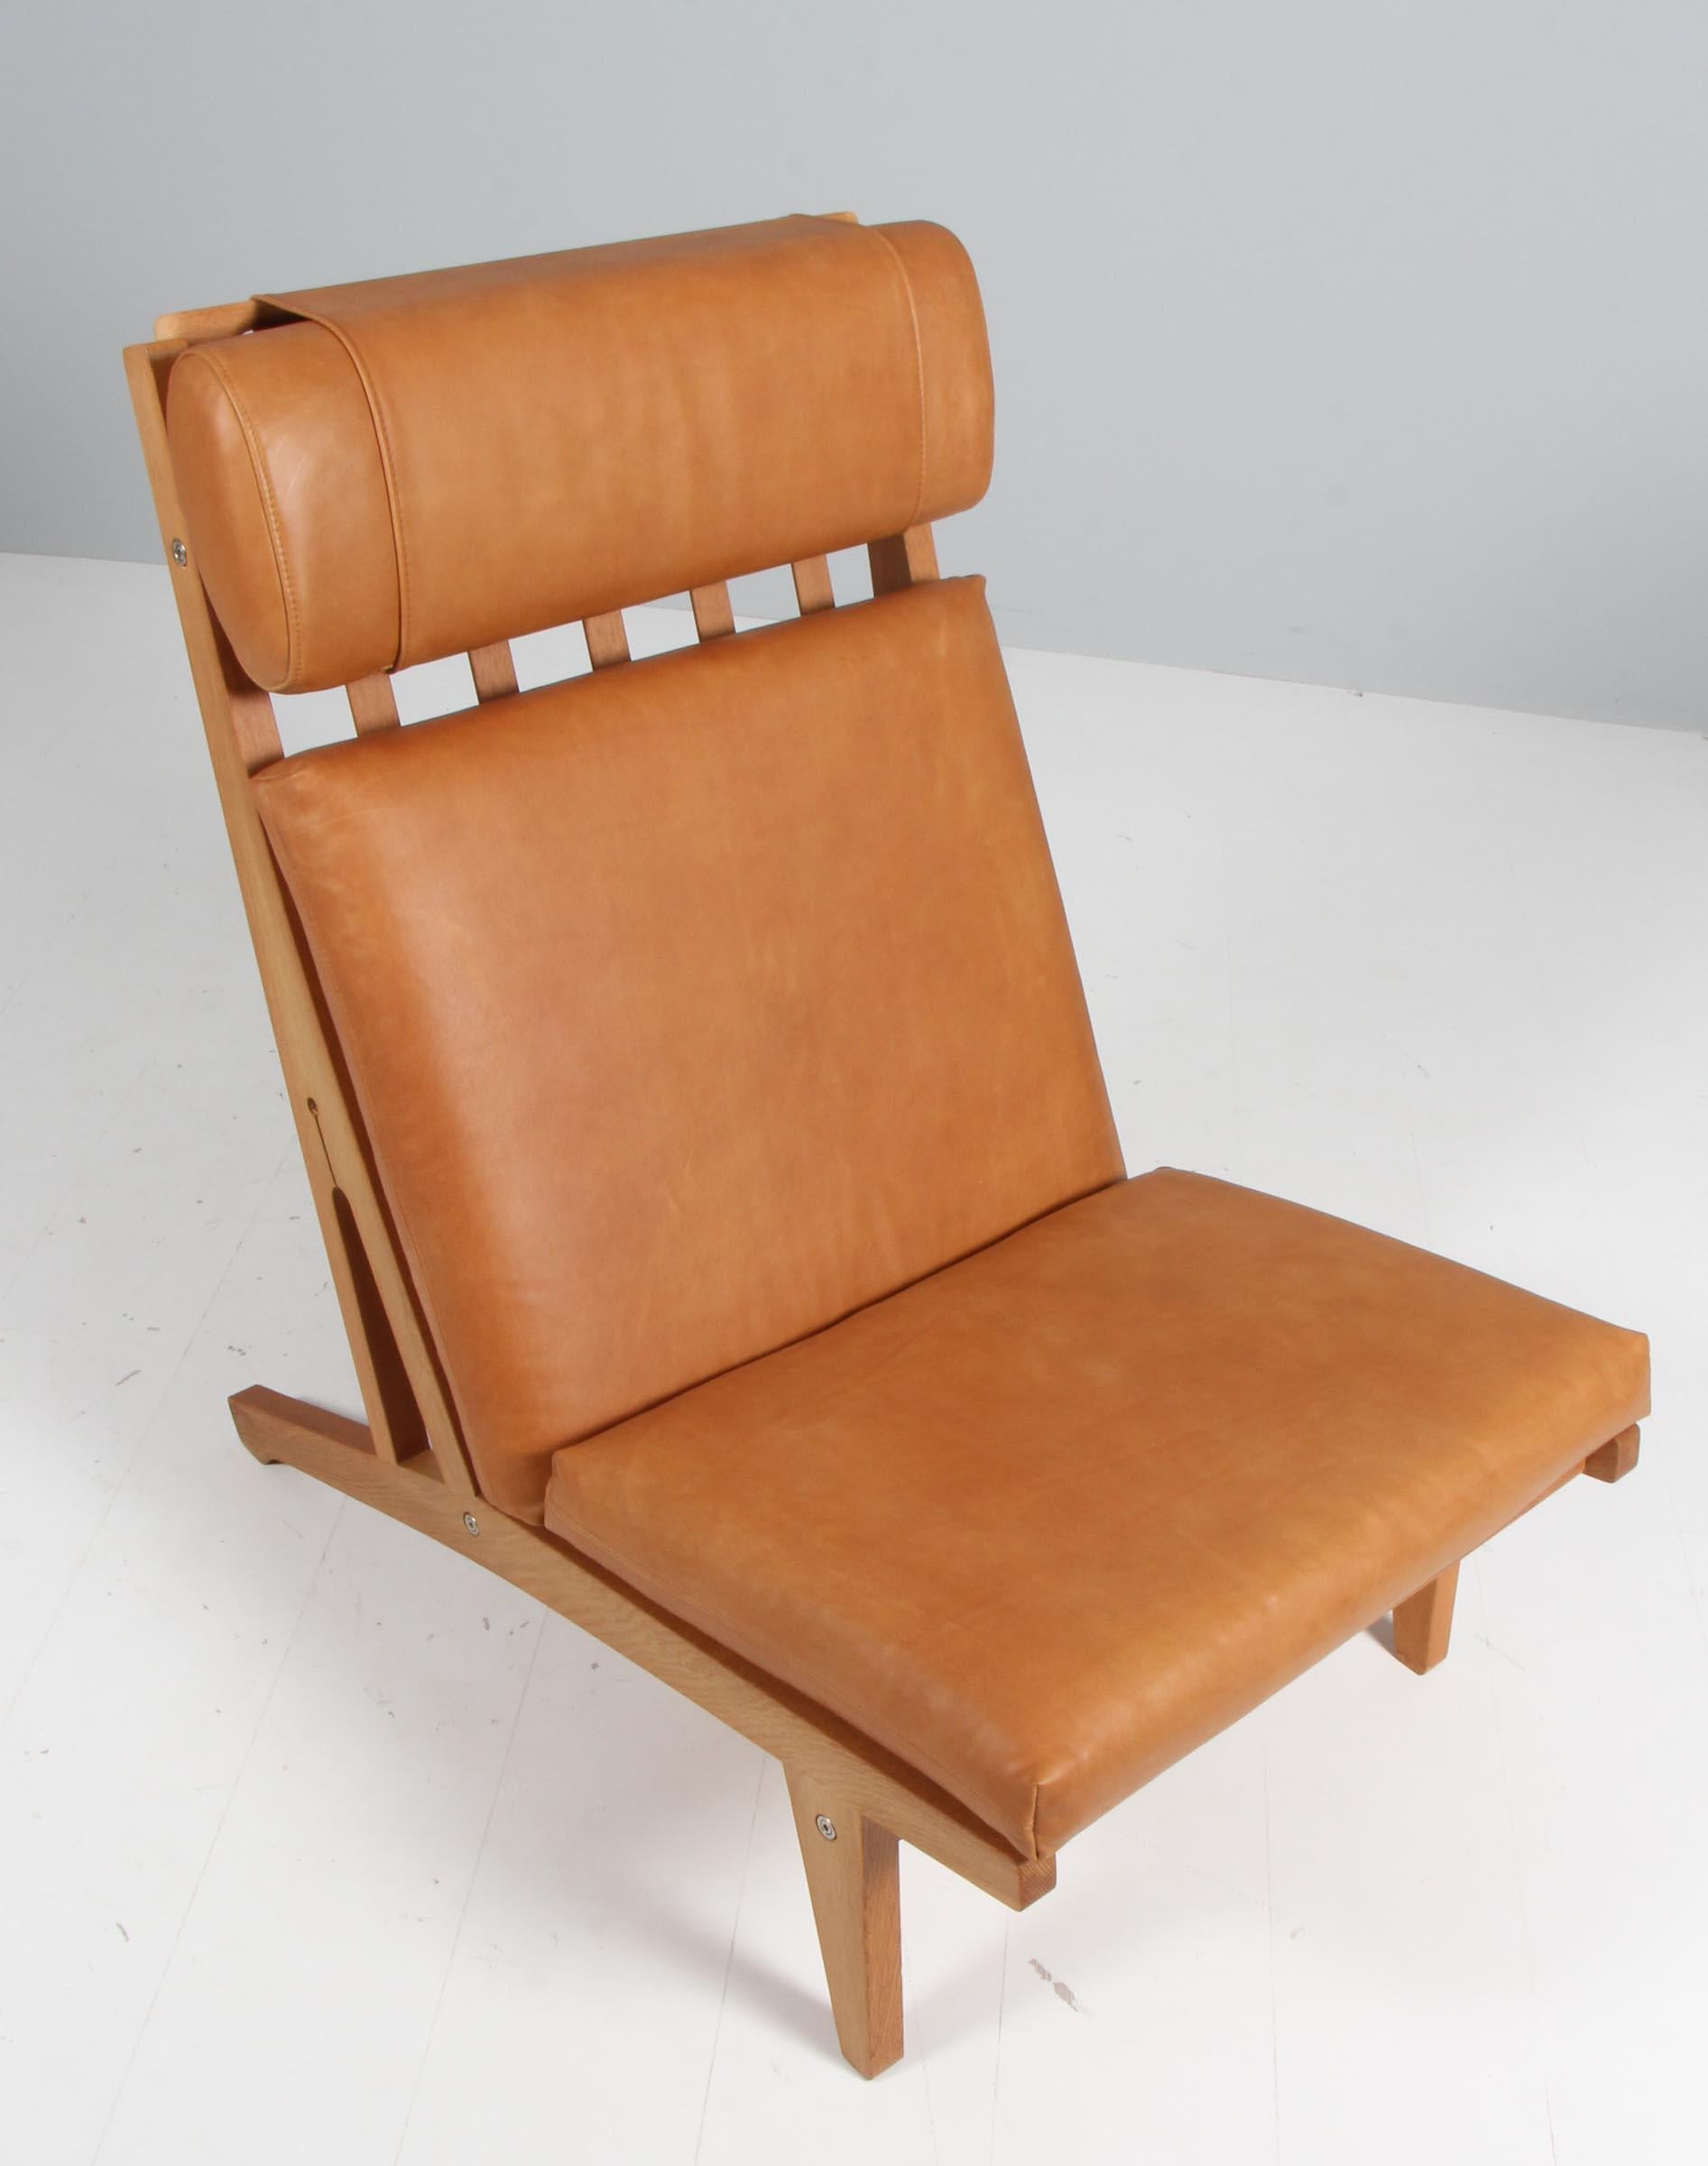 Chaise de salon Hans J. Wegner avec coussins détachés, nouvellement recouverte de cuir à l'aniline pleine fleur cognac vintage.

Cadre en chêne.

Modèle GE-375, fabriqué par GETAMA.